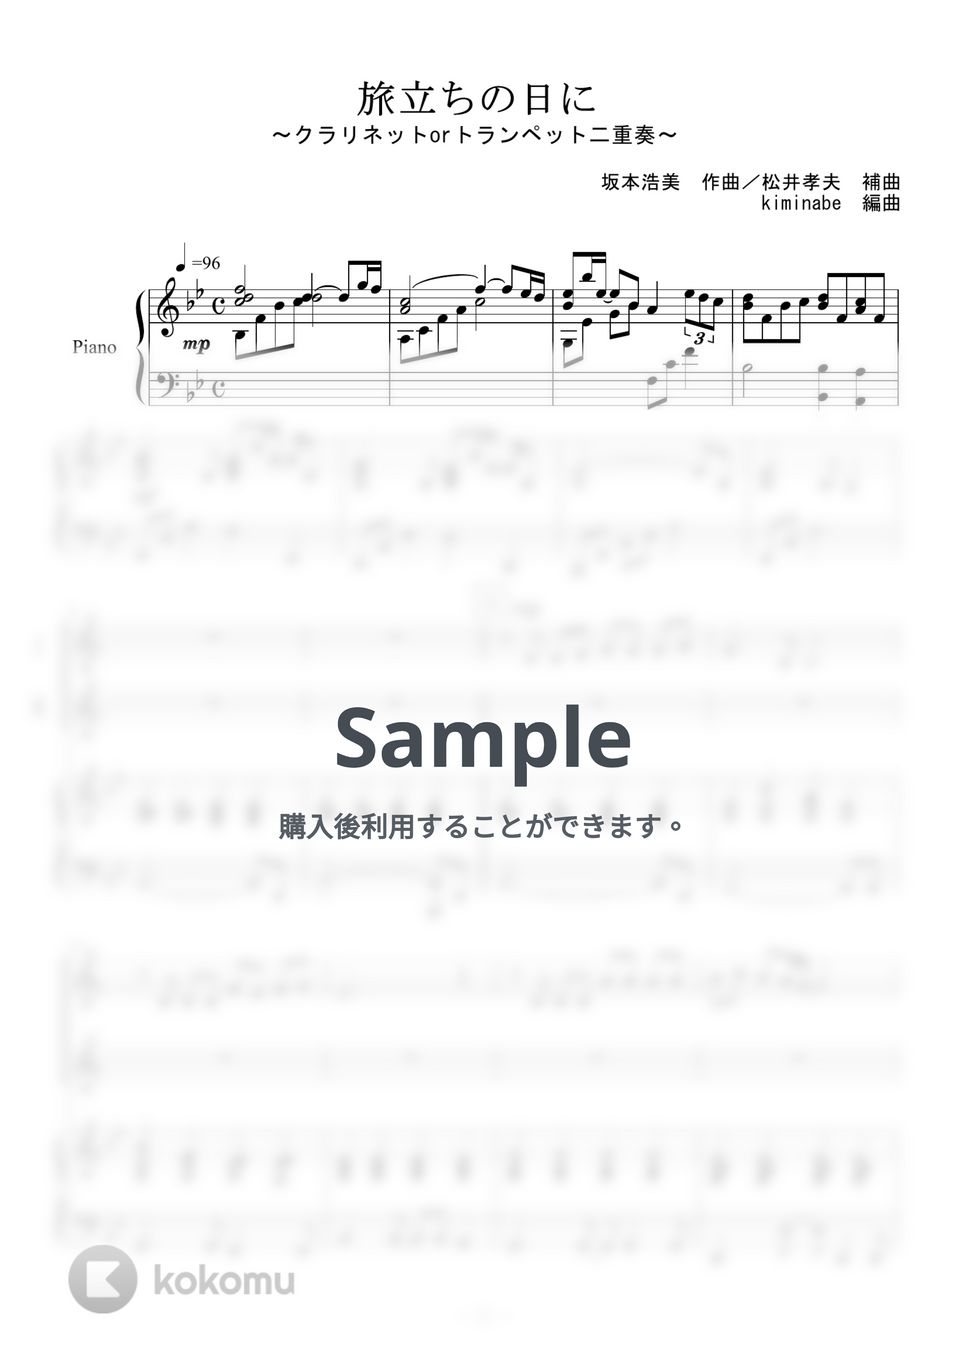 坂本浩美 - 旅立ちの日に (クラリネットorトラペット二重奏) by kiminabe